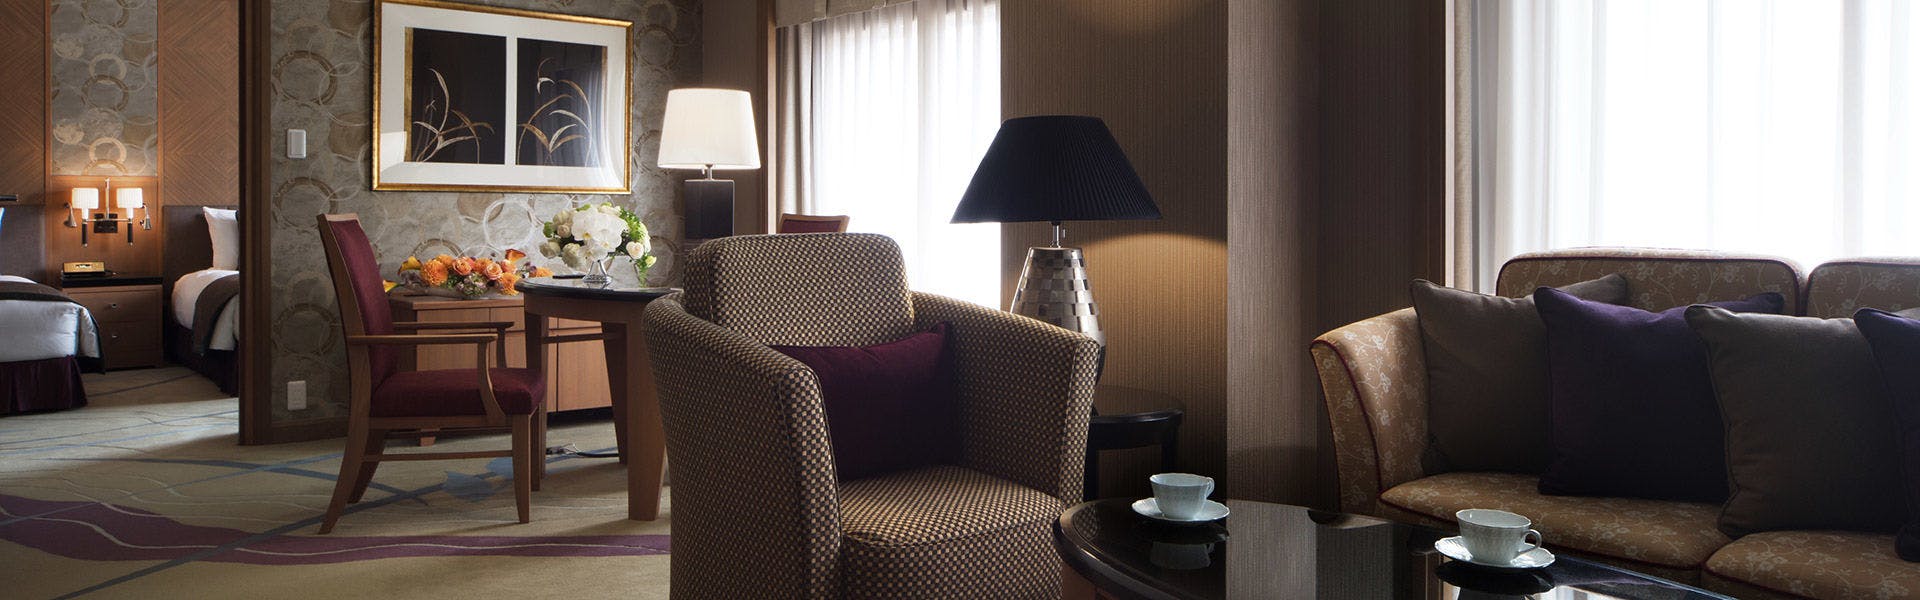 記念日におすすめのホテル・【ホテルメトロポリタン】 の空室状況を確認するの写真3